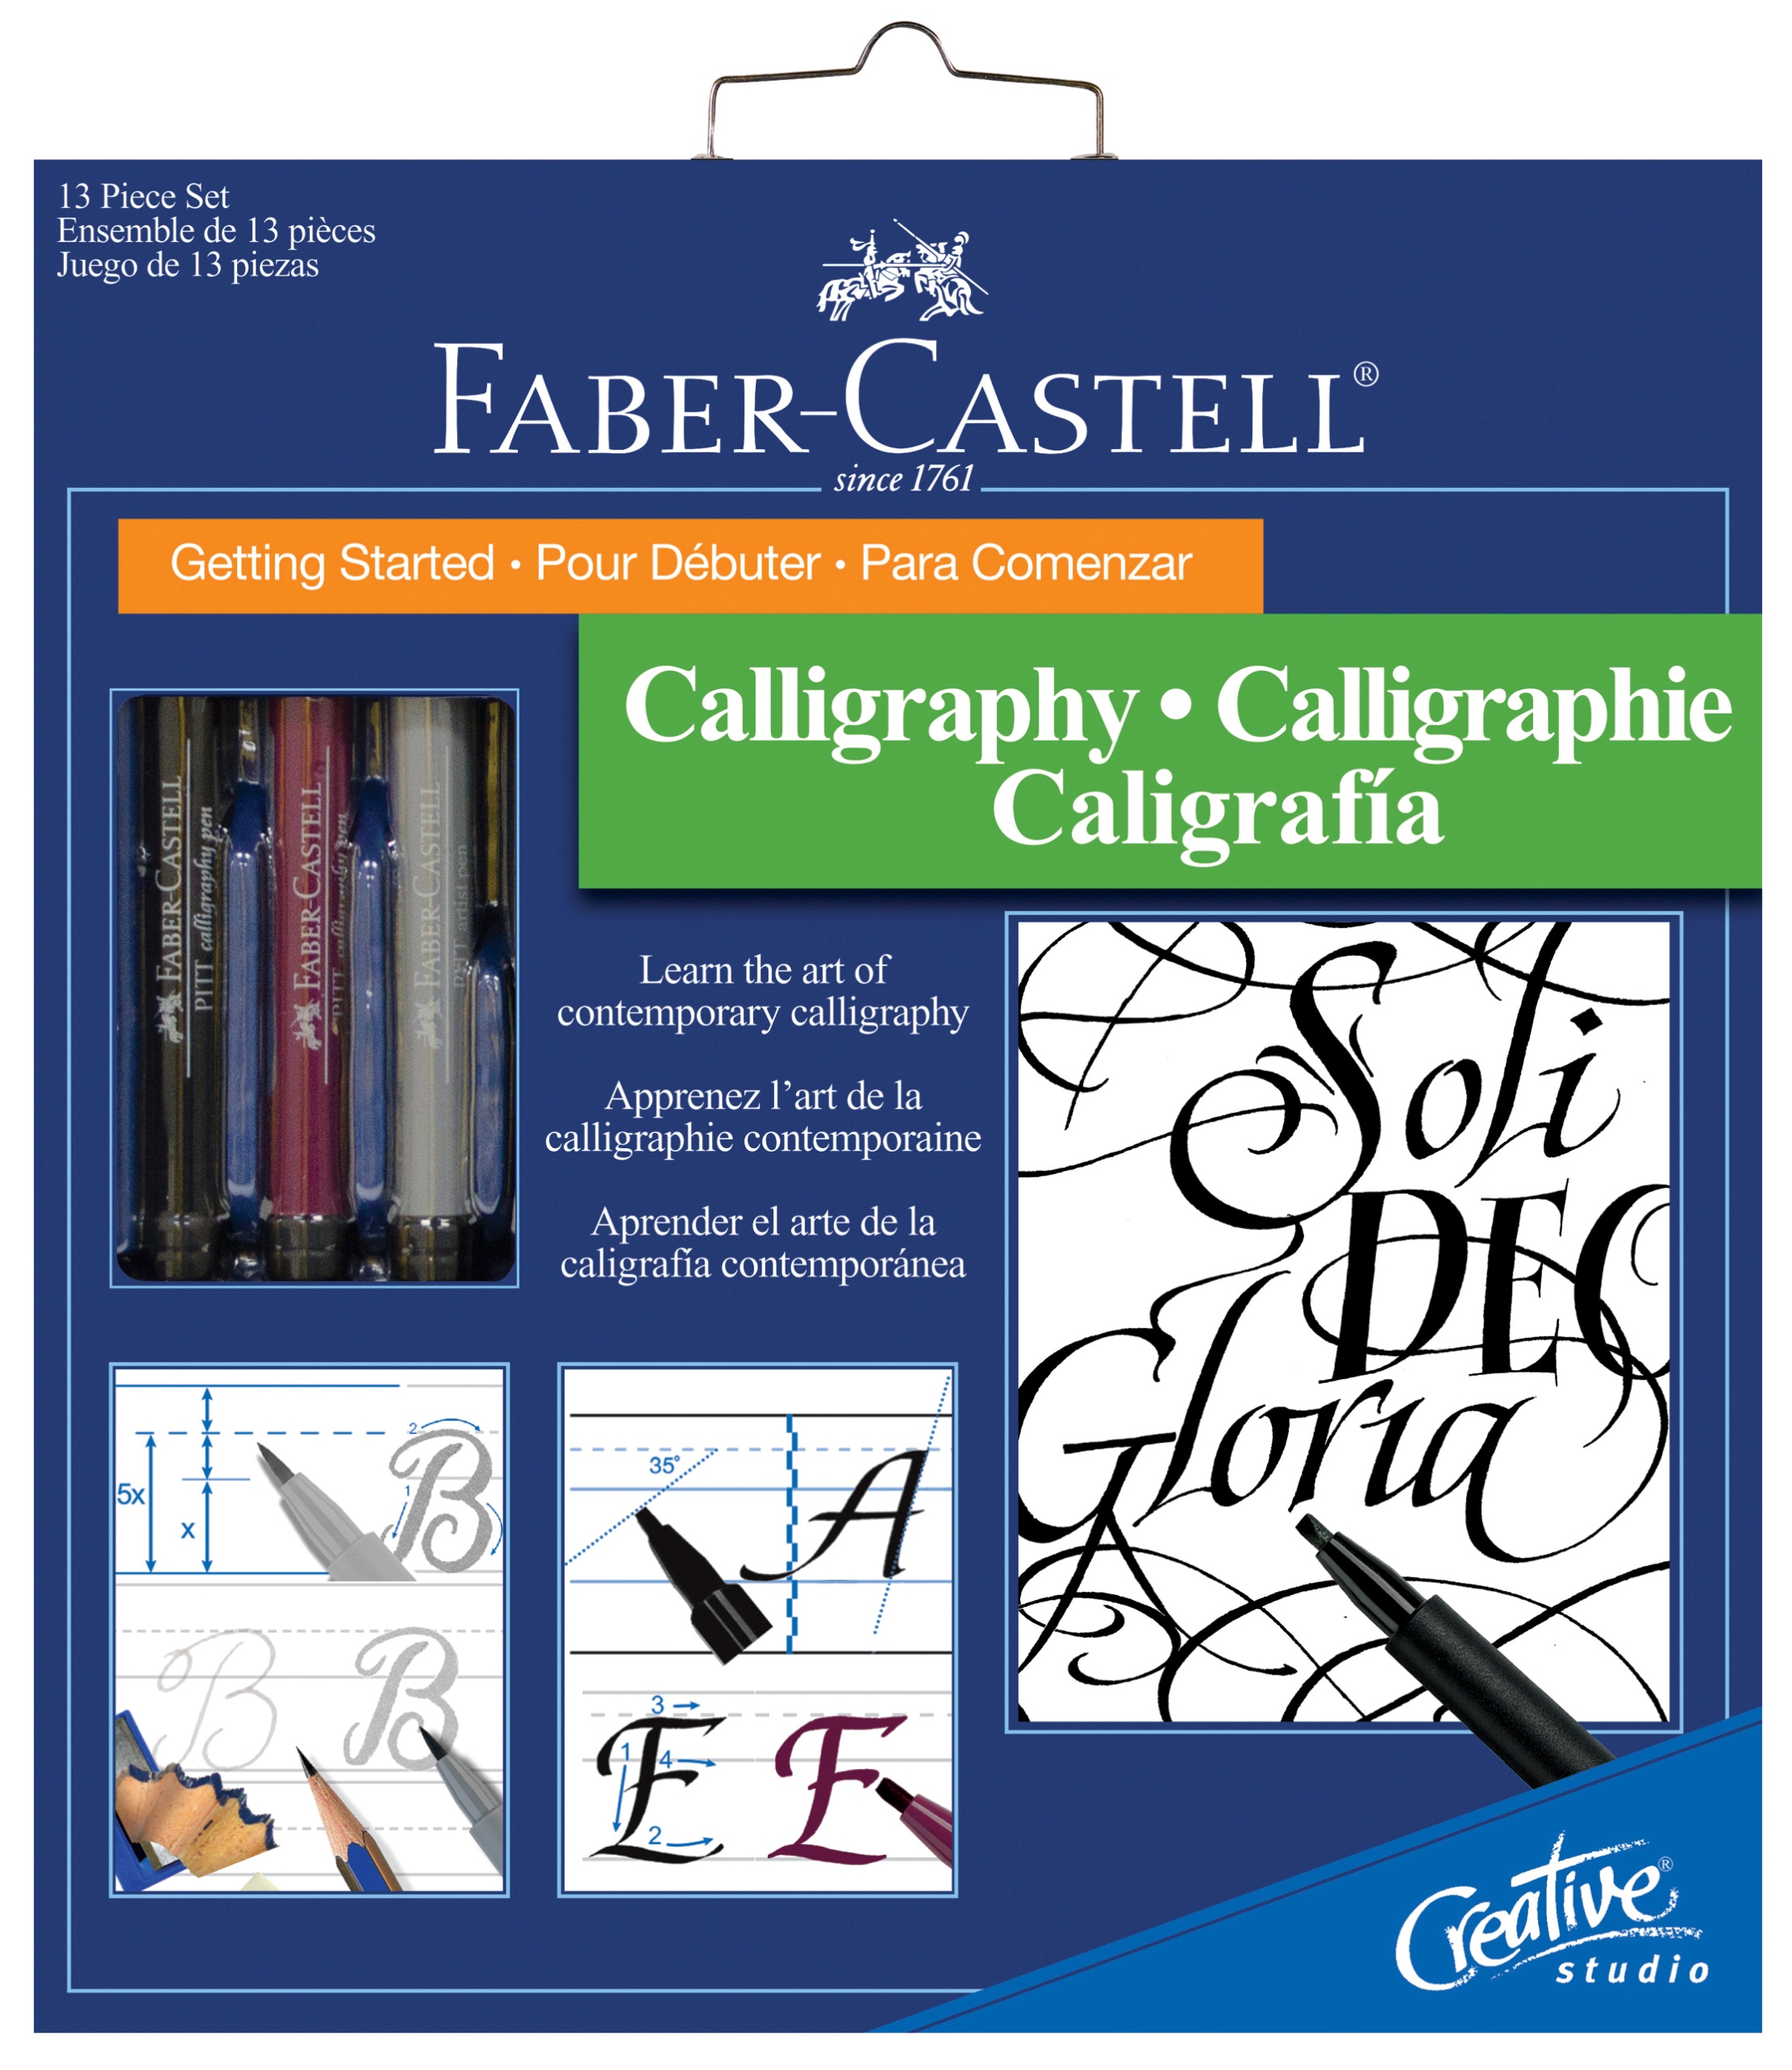 Faber-Castell Bible Journaling Kit 